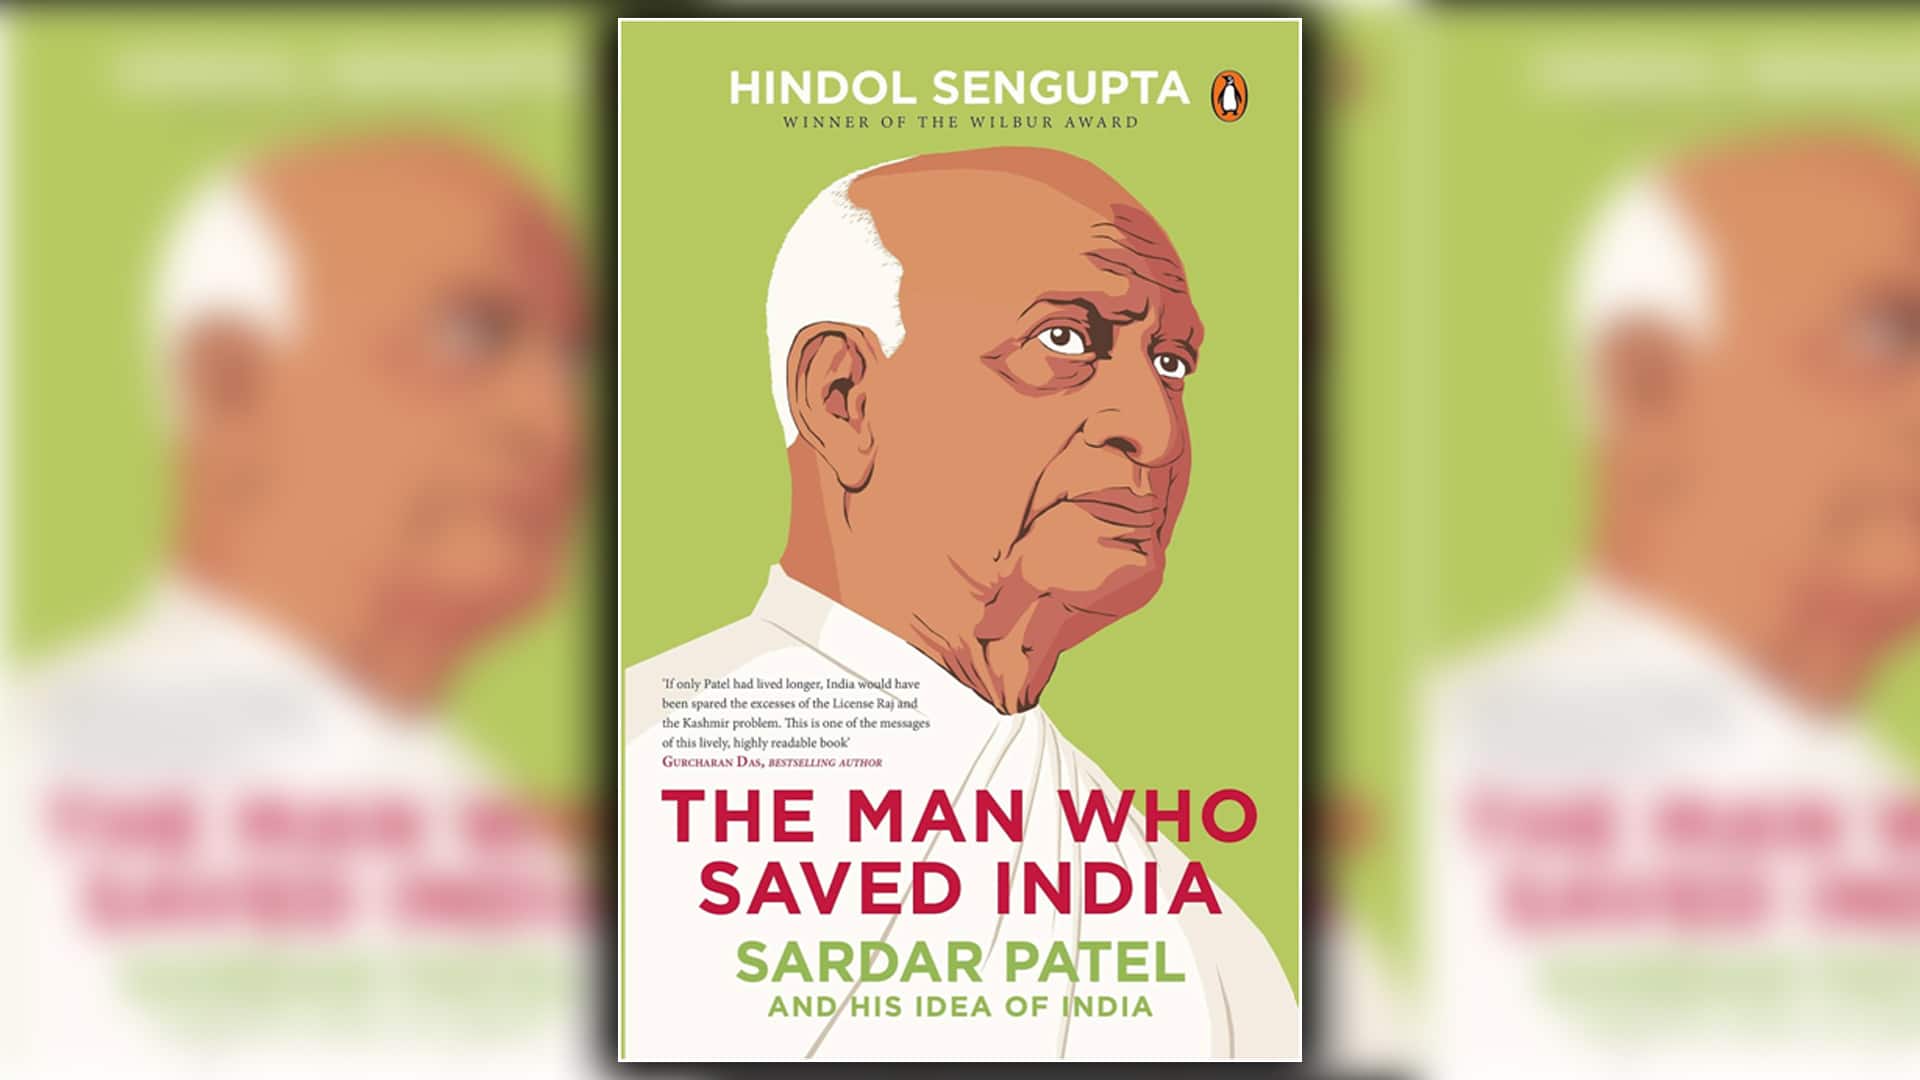 Hindol Sengupta, Sardar Patel, Vallabhbhai Patel, Jawaharlal Nehru, Mahatma Gandhi